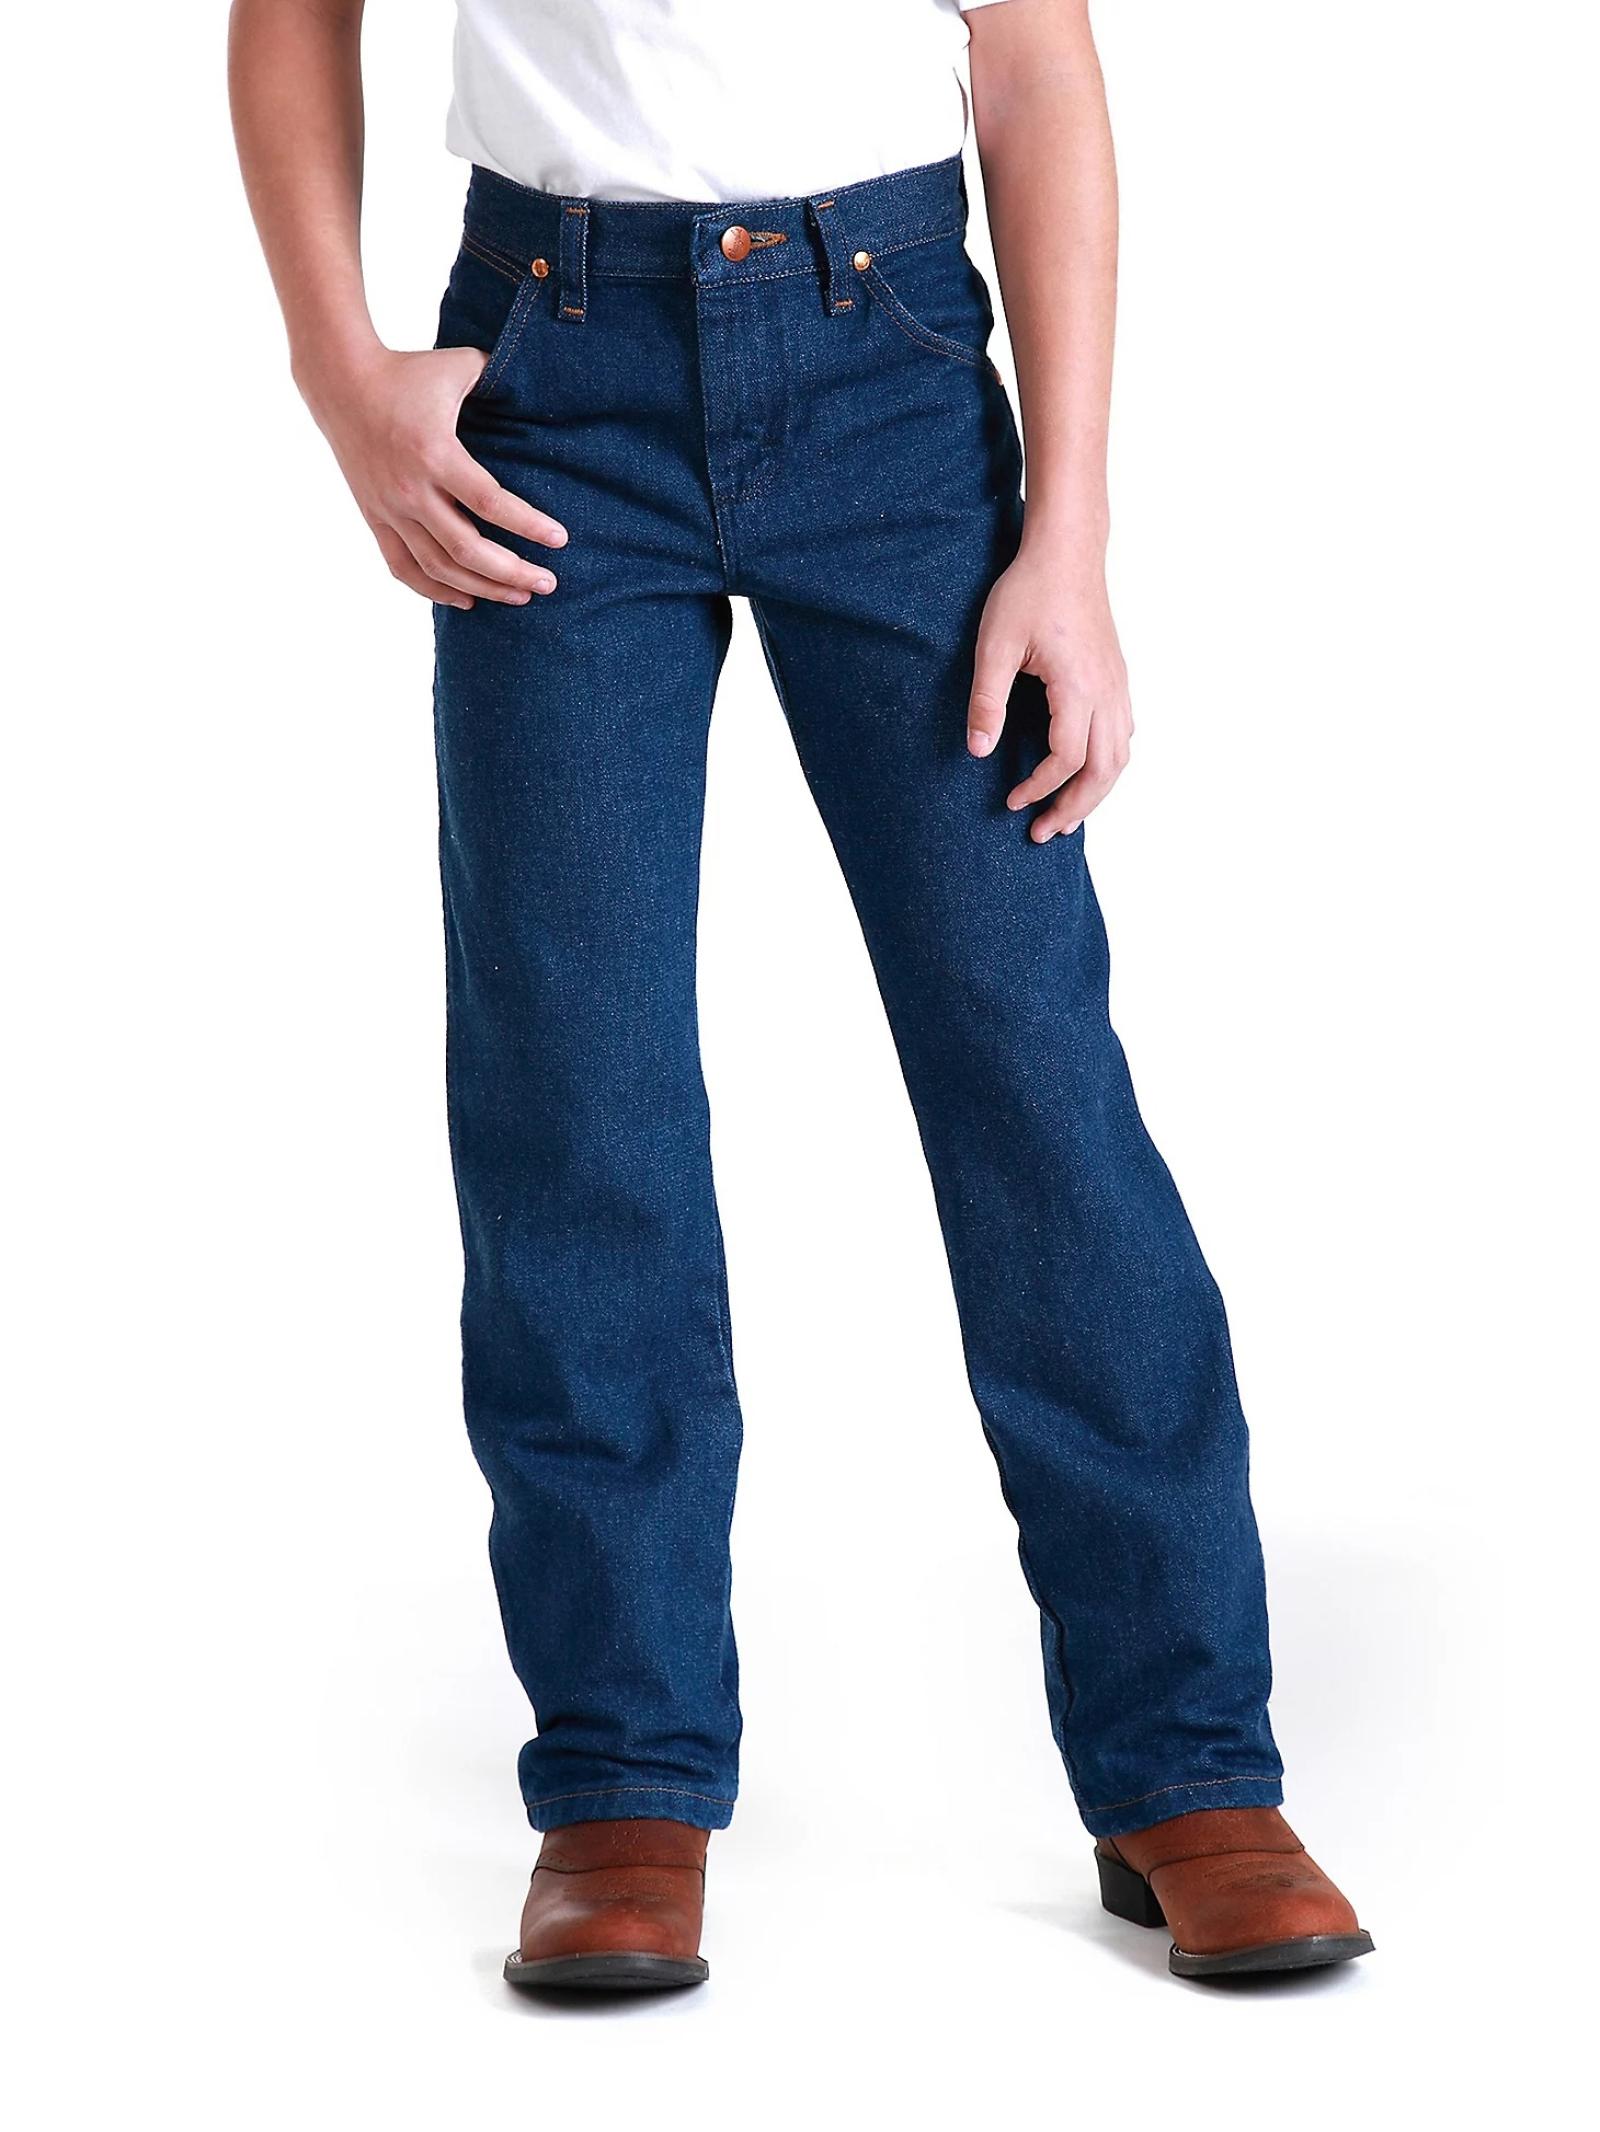 Wrangler Young Men's Cowboy Cut Original Fit Jean